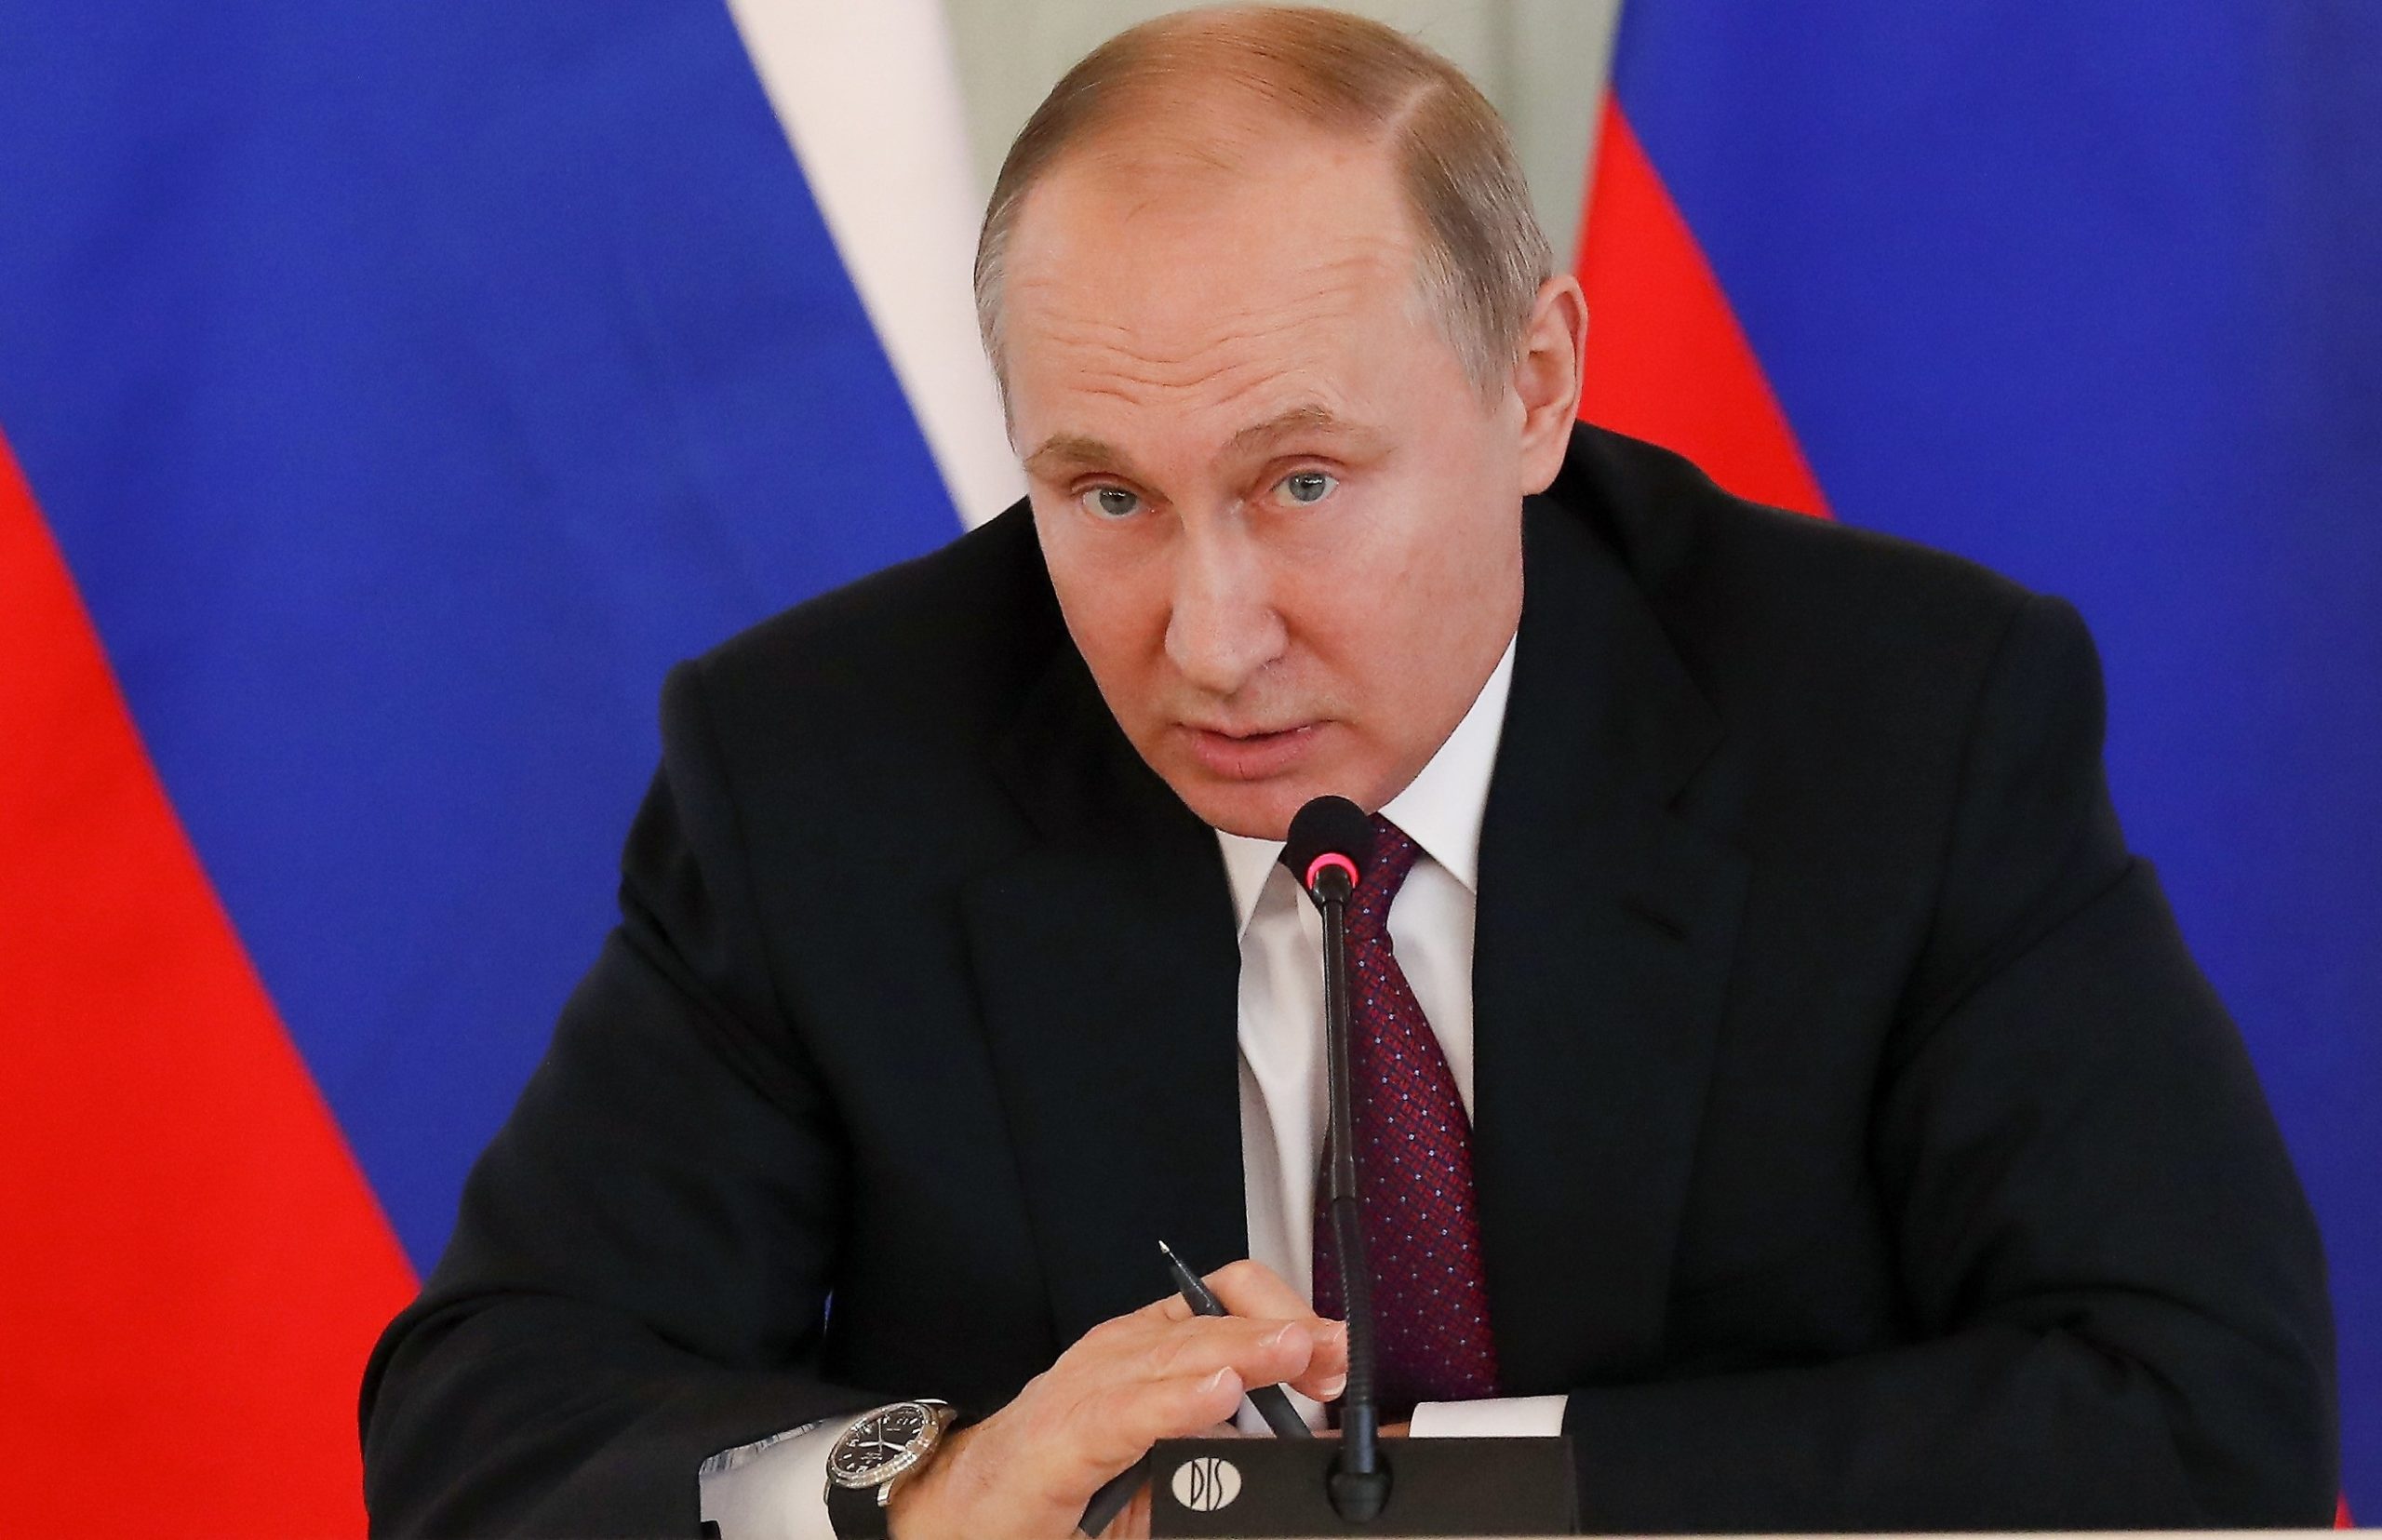 Putin a lăudat vaccinul rusesc, dar nu l-a făcut. Sputnik V e încă în teste, cu 2-3 luni în urma altor vaccinuri